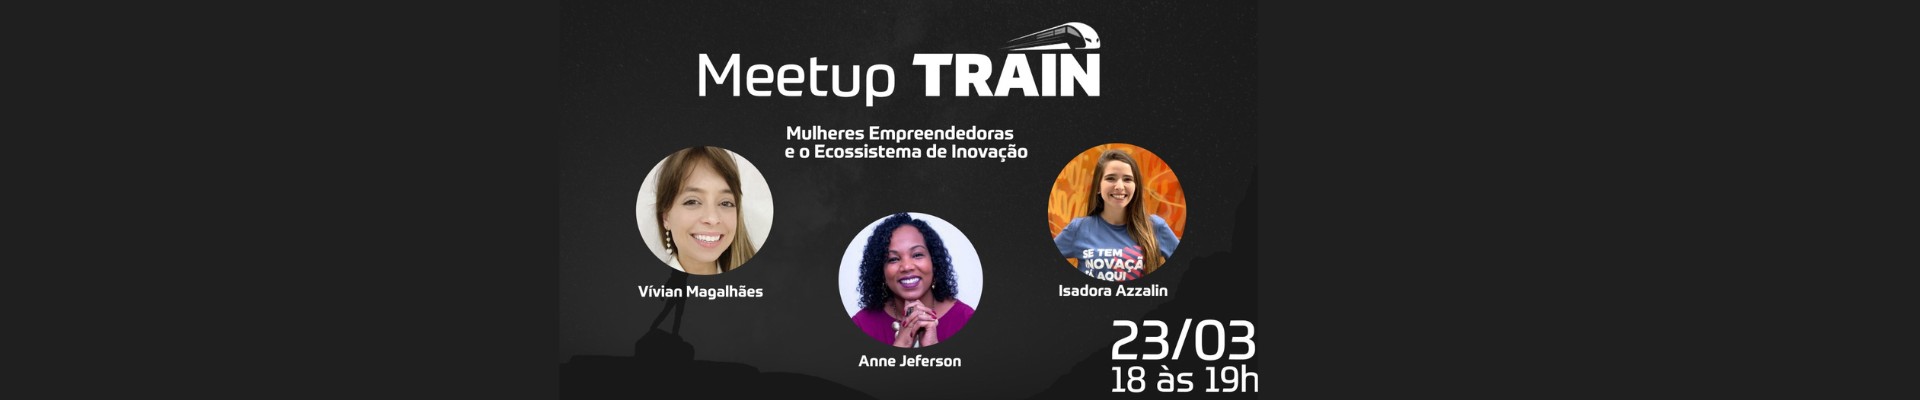 Meetup TRAIN - Mês das Mulheres